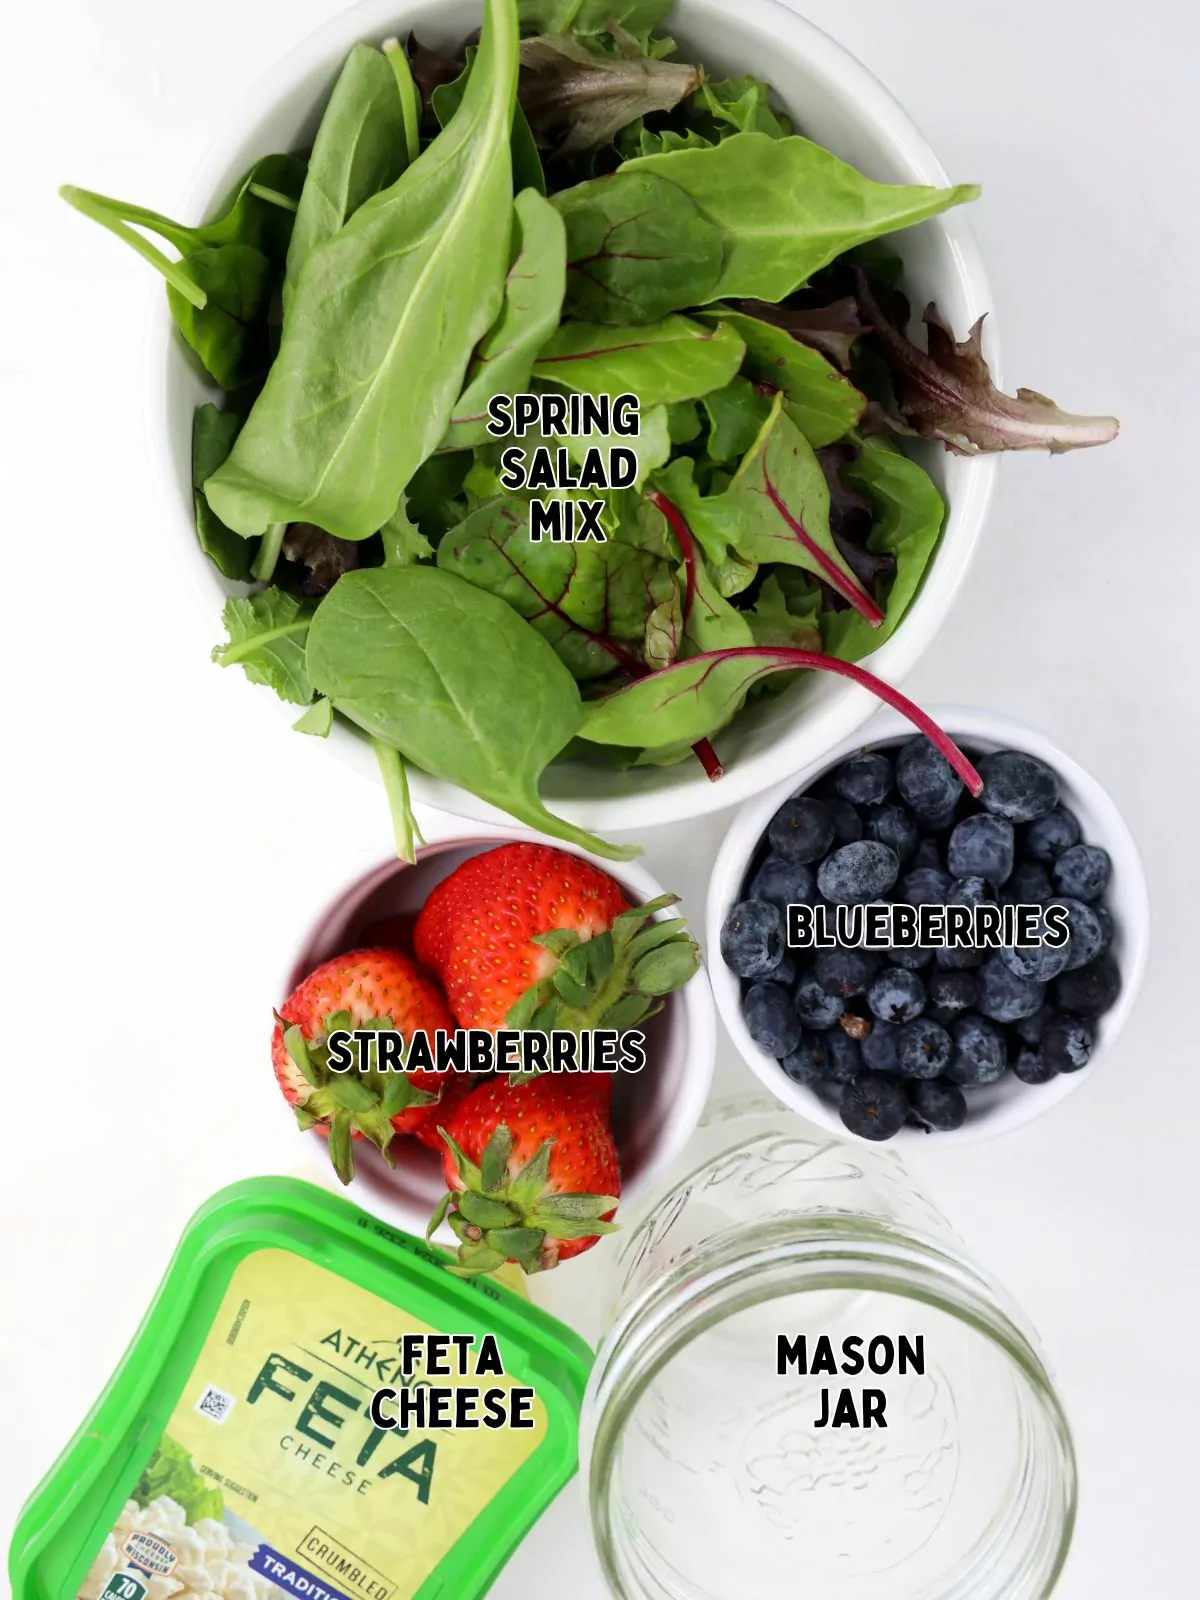 Ingredients for Patriotic Salad Recipe in a Mason Jar